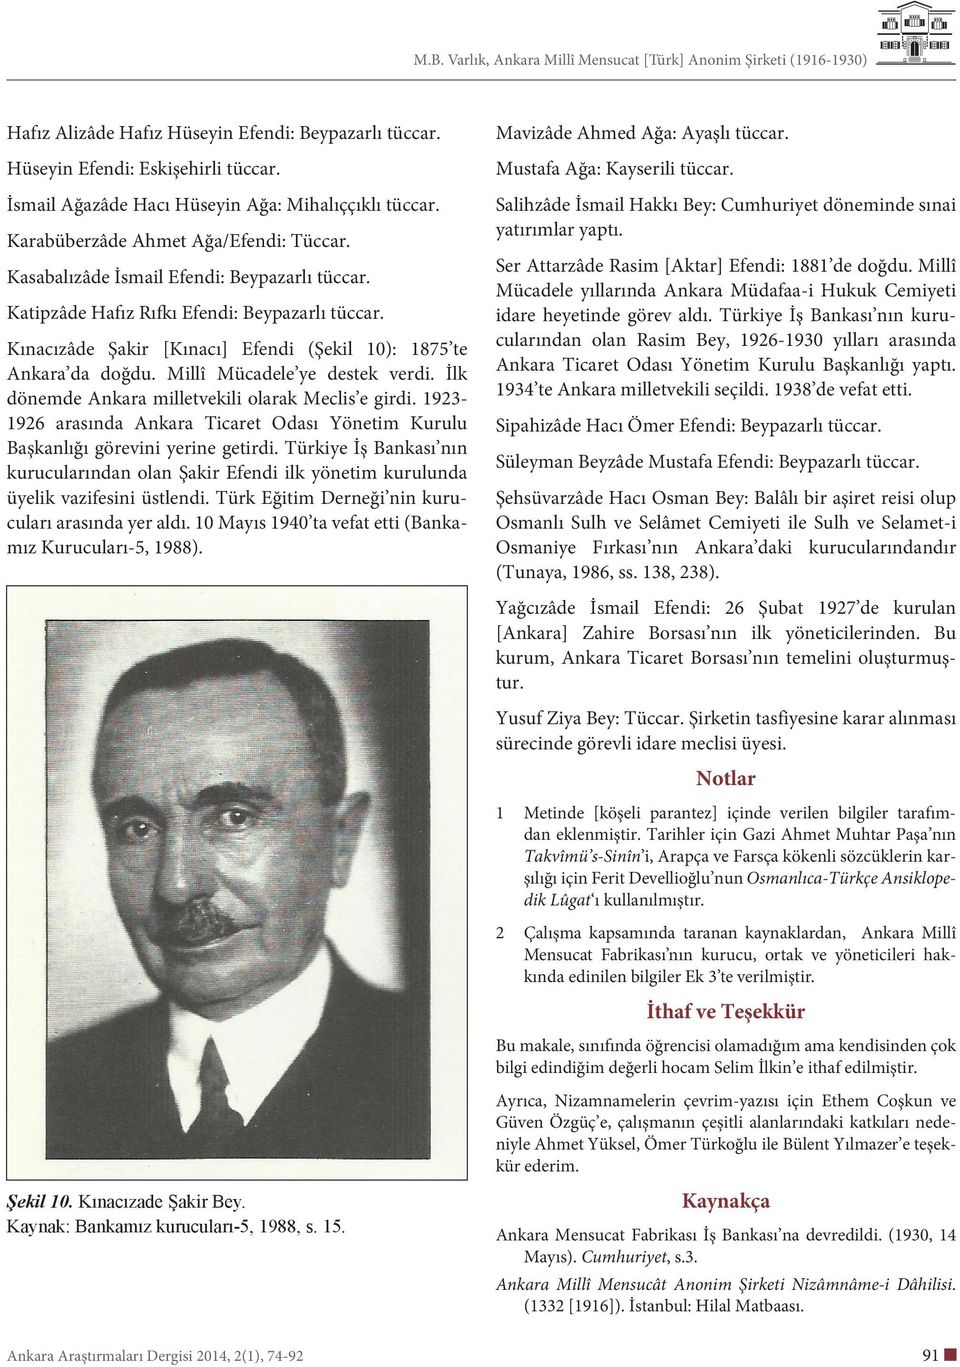 İlk dönemde Ankara milletvekili olarak Meclis e girdi. 1923-1926 arasında Ankara Ticaret Odası Yönetim Kurulu Başkanlığı görevini yerine getirdi.